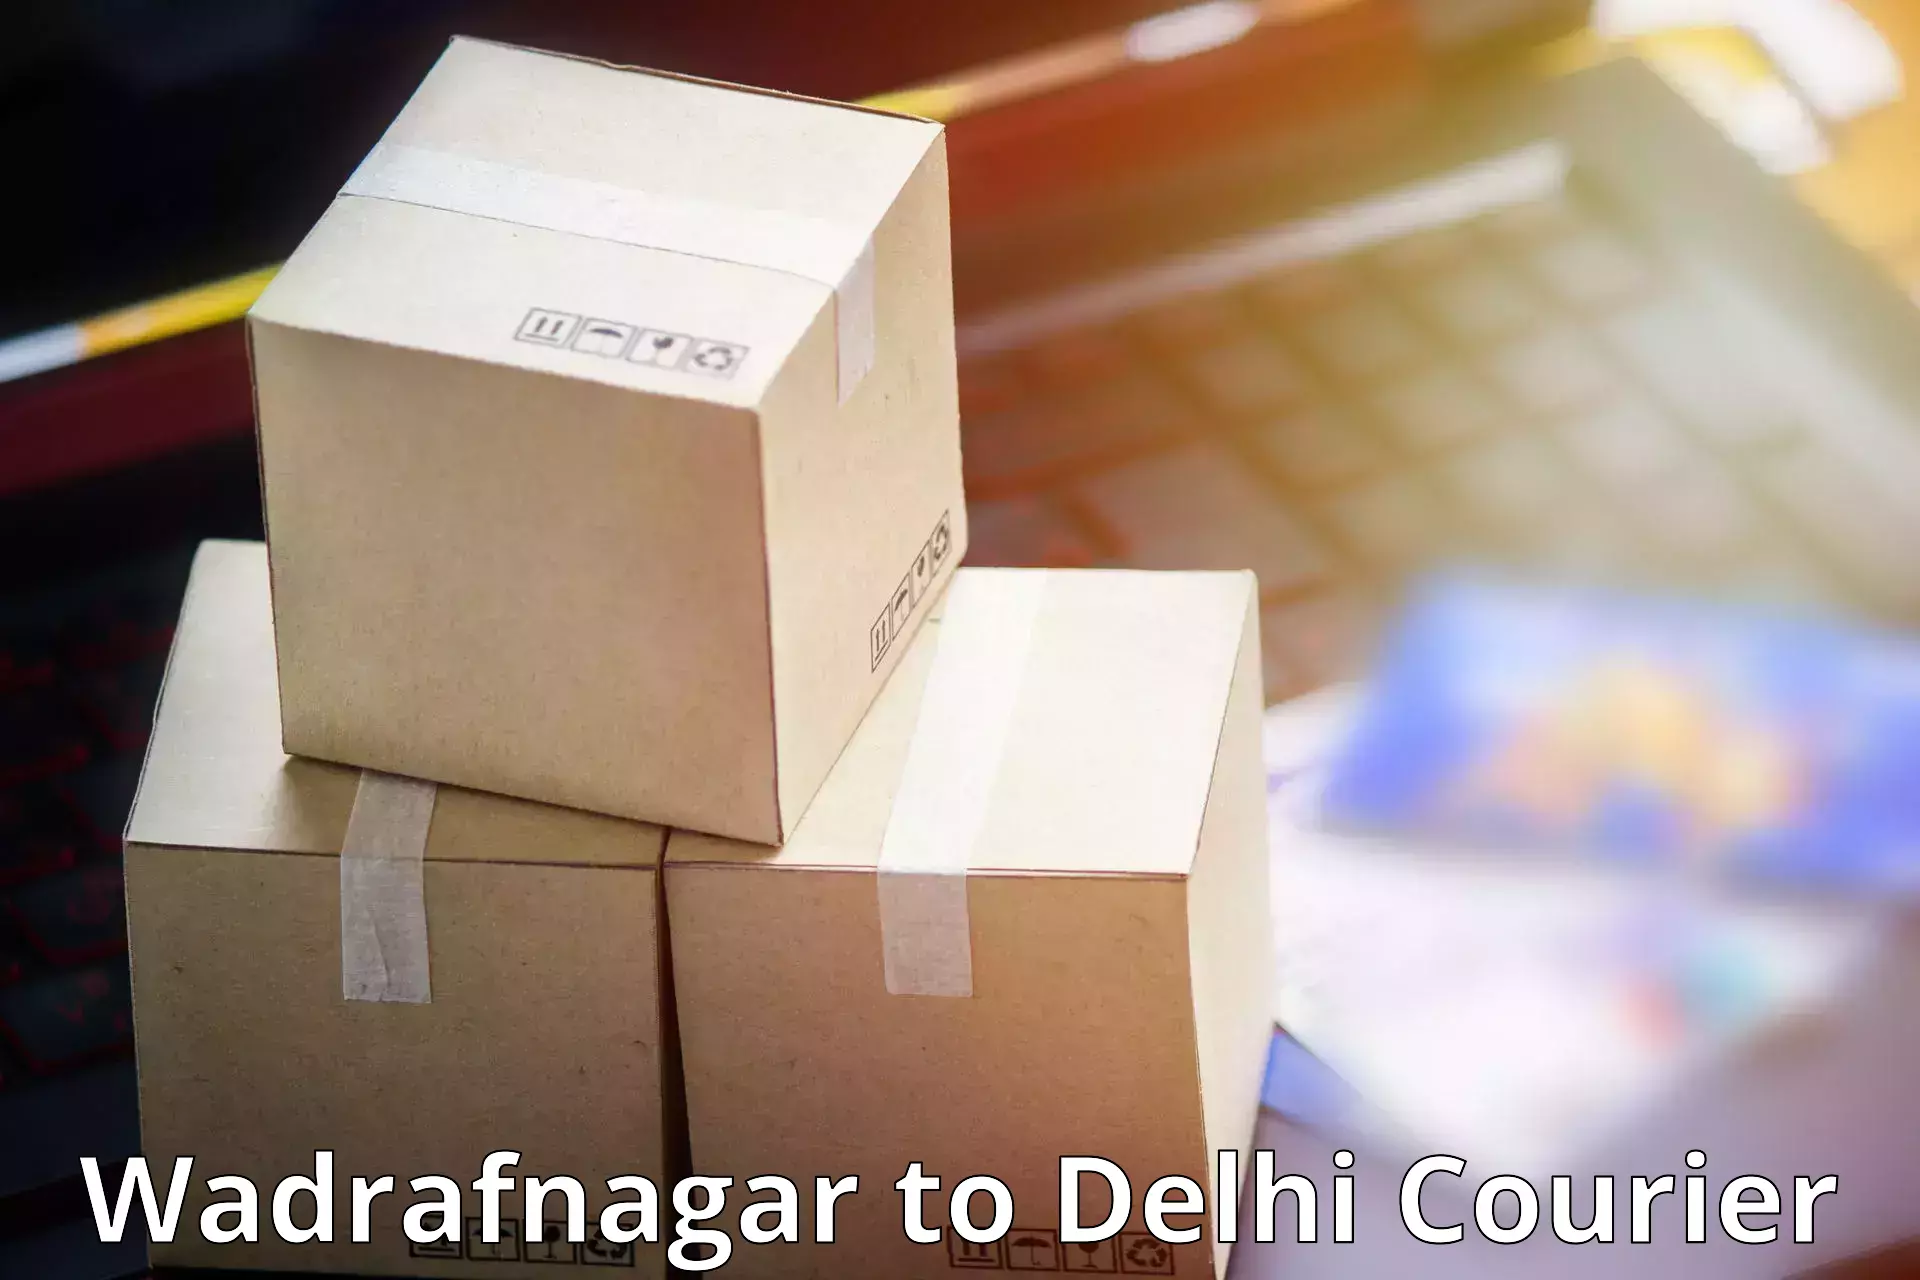 Innovative shipping solutions Wadrafnagar to Indraprastha